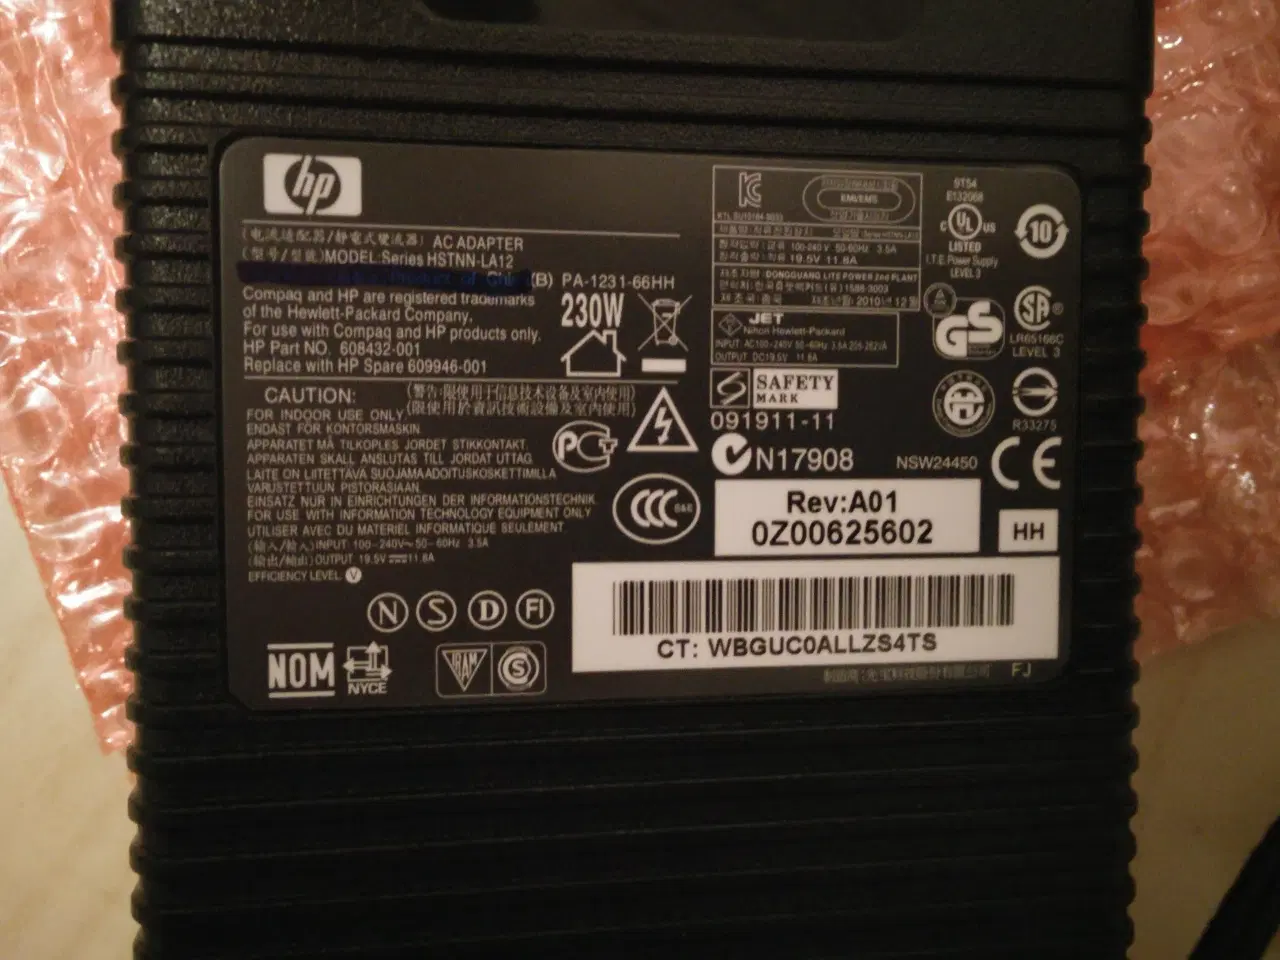 Billede 2 - Universal Compaq oplader Ny Til HP og andre mærker